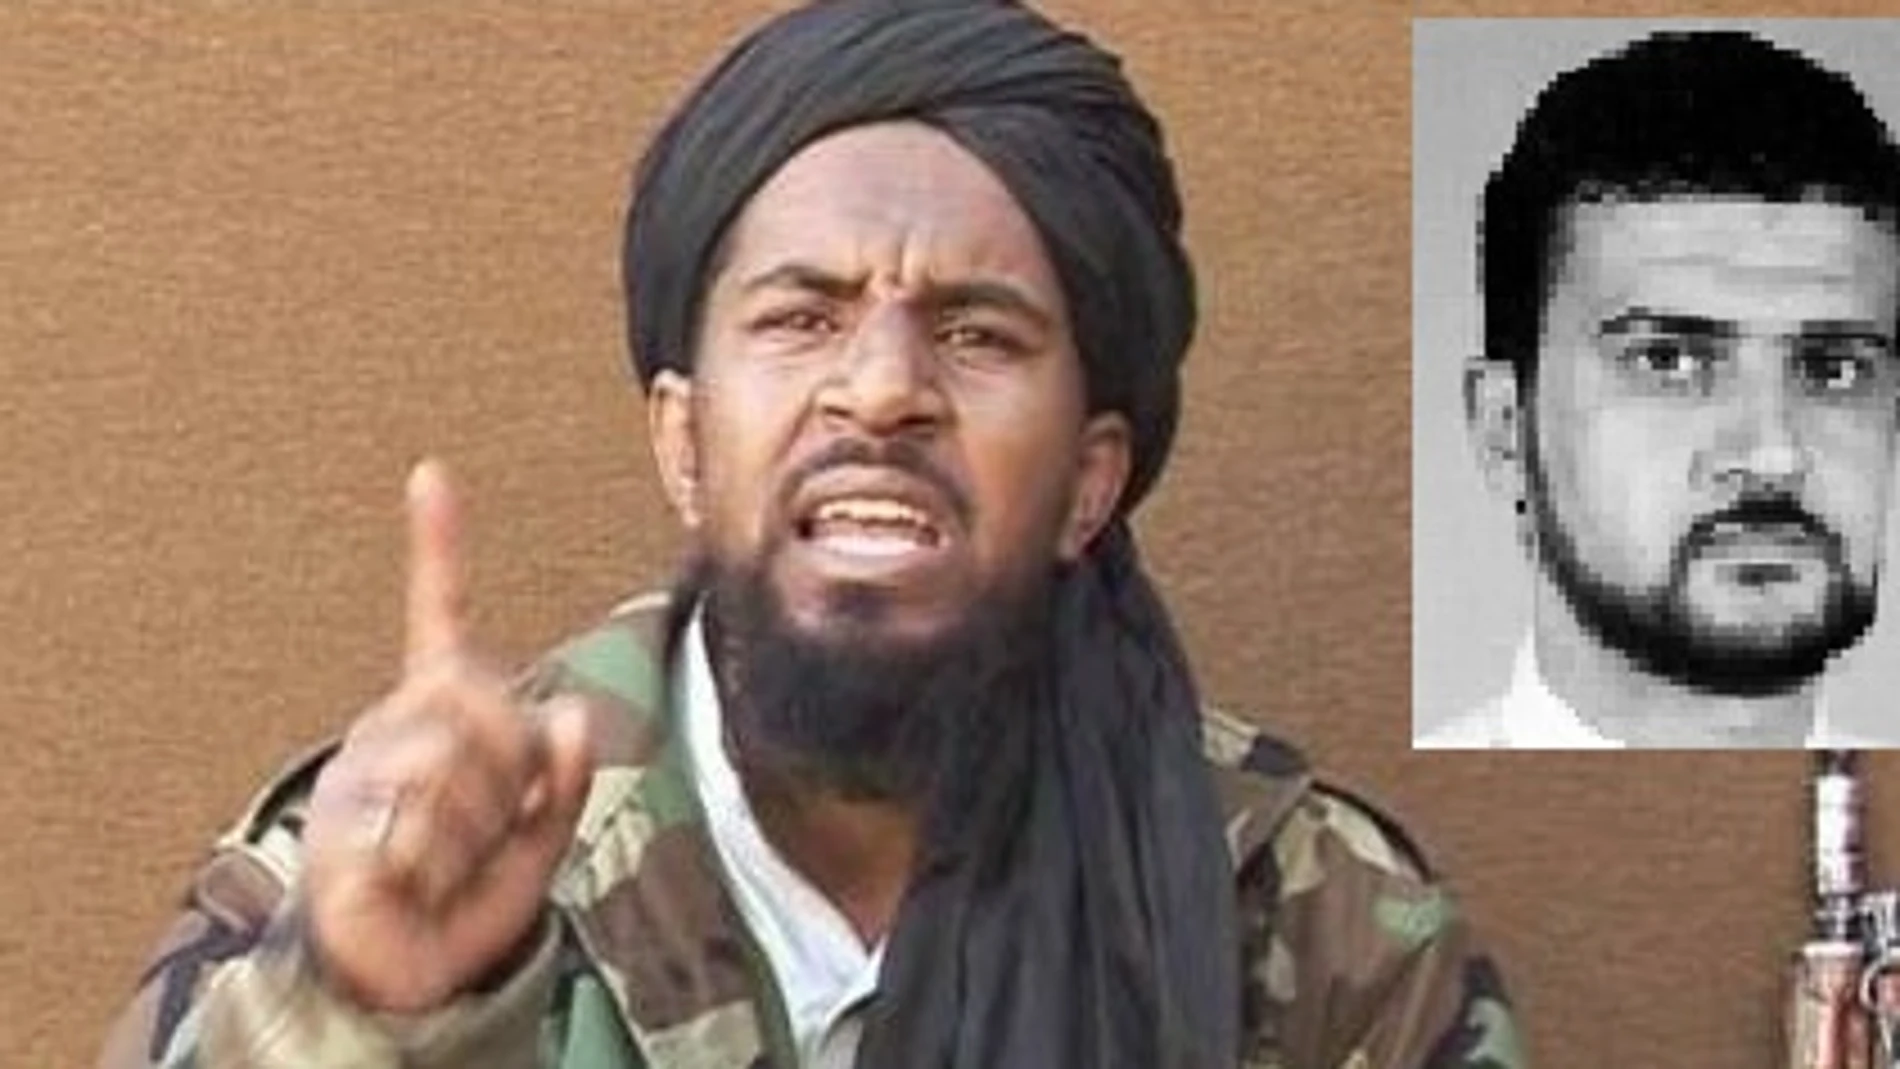 Abu Anas al Libi. Arriba a la derecha, foto de la ficha del FBI. El cabecilla de Al Qaeda ha sido capturado en Libia por Estados Unidos.